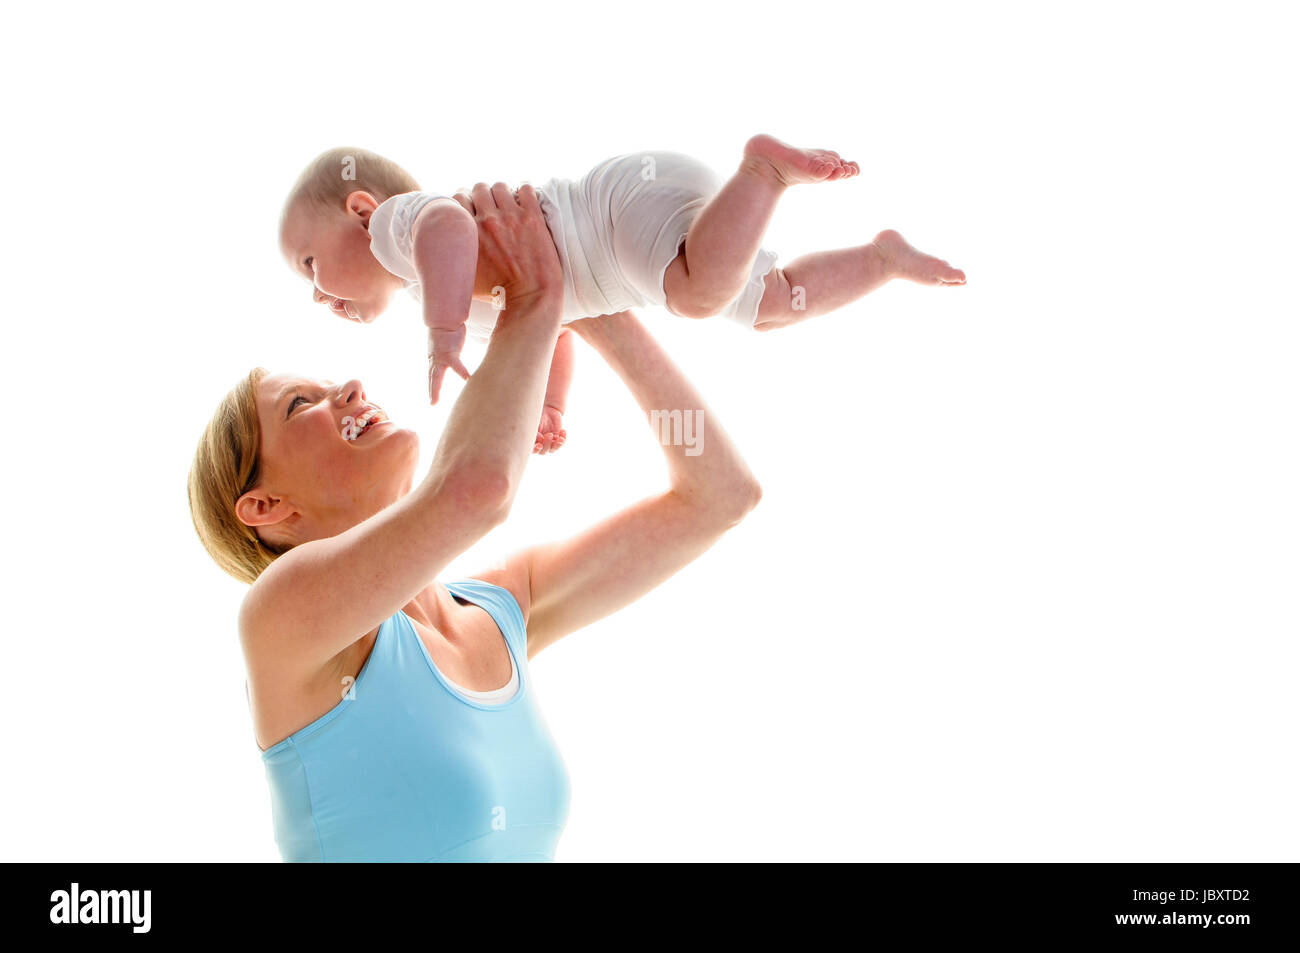 Junge Mutter macht mit ihrer 6 Monate alten Tochter Rueckbildungsgymnastik, isoliert vor weissem Hintergrund. Sie kniet am Boden und hebt das Baby hoch und lacht dabei. Stock Photo